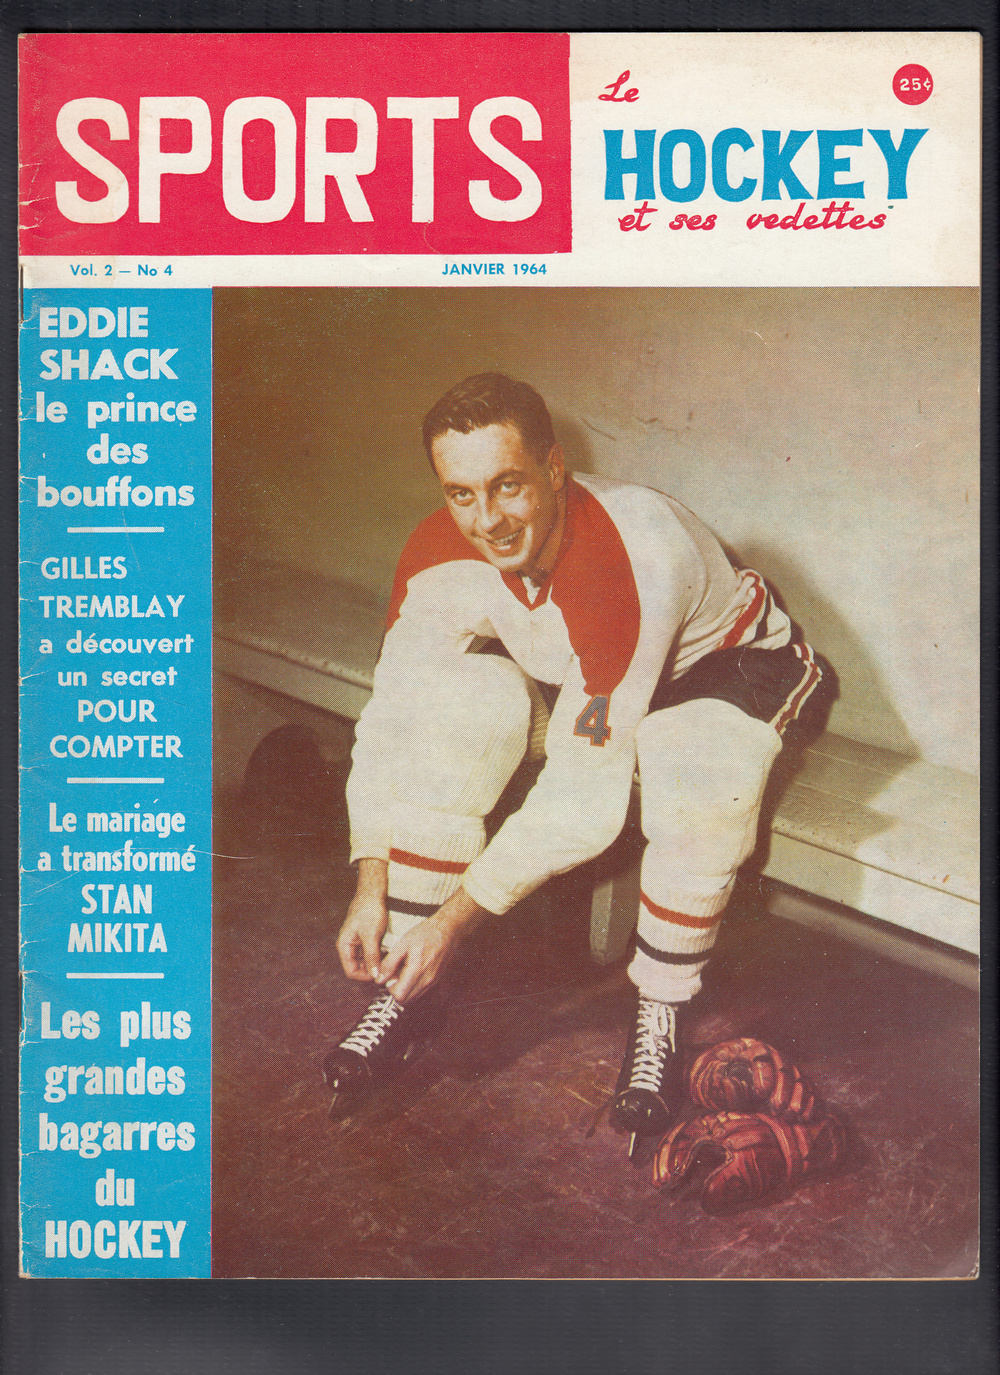 1964 SPORTS HOCKEY MAGAZINE J. BELIVEAU ON COVER photo